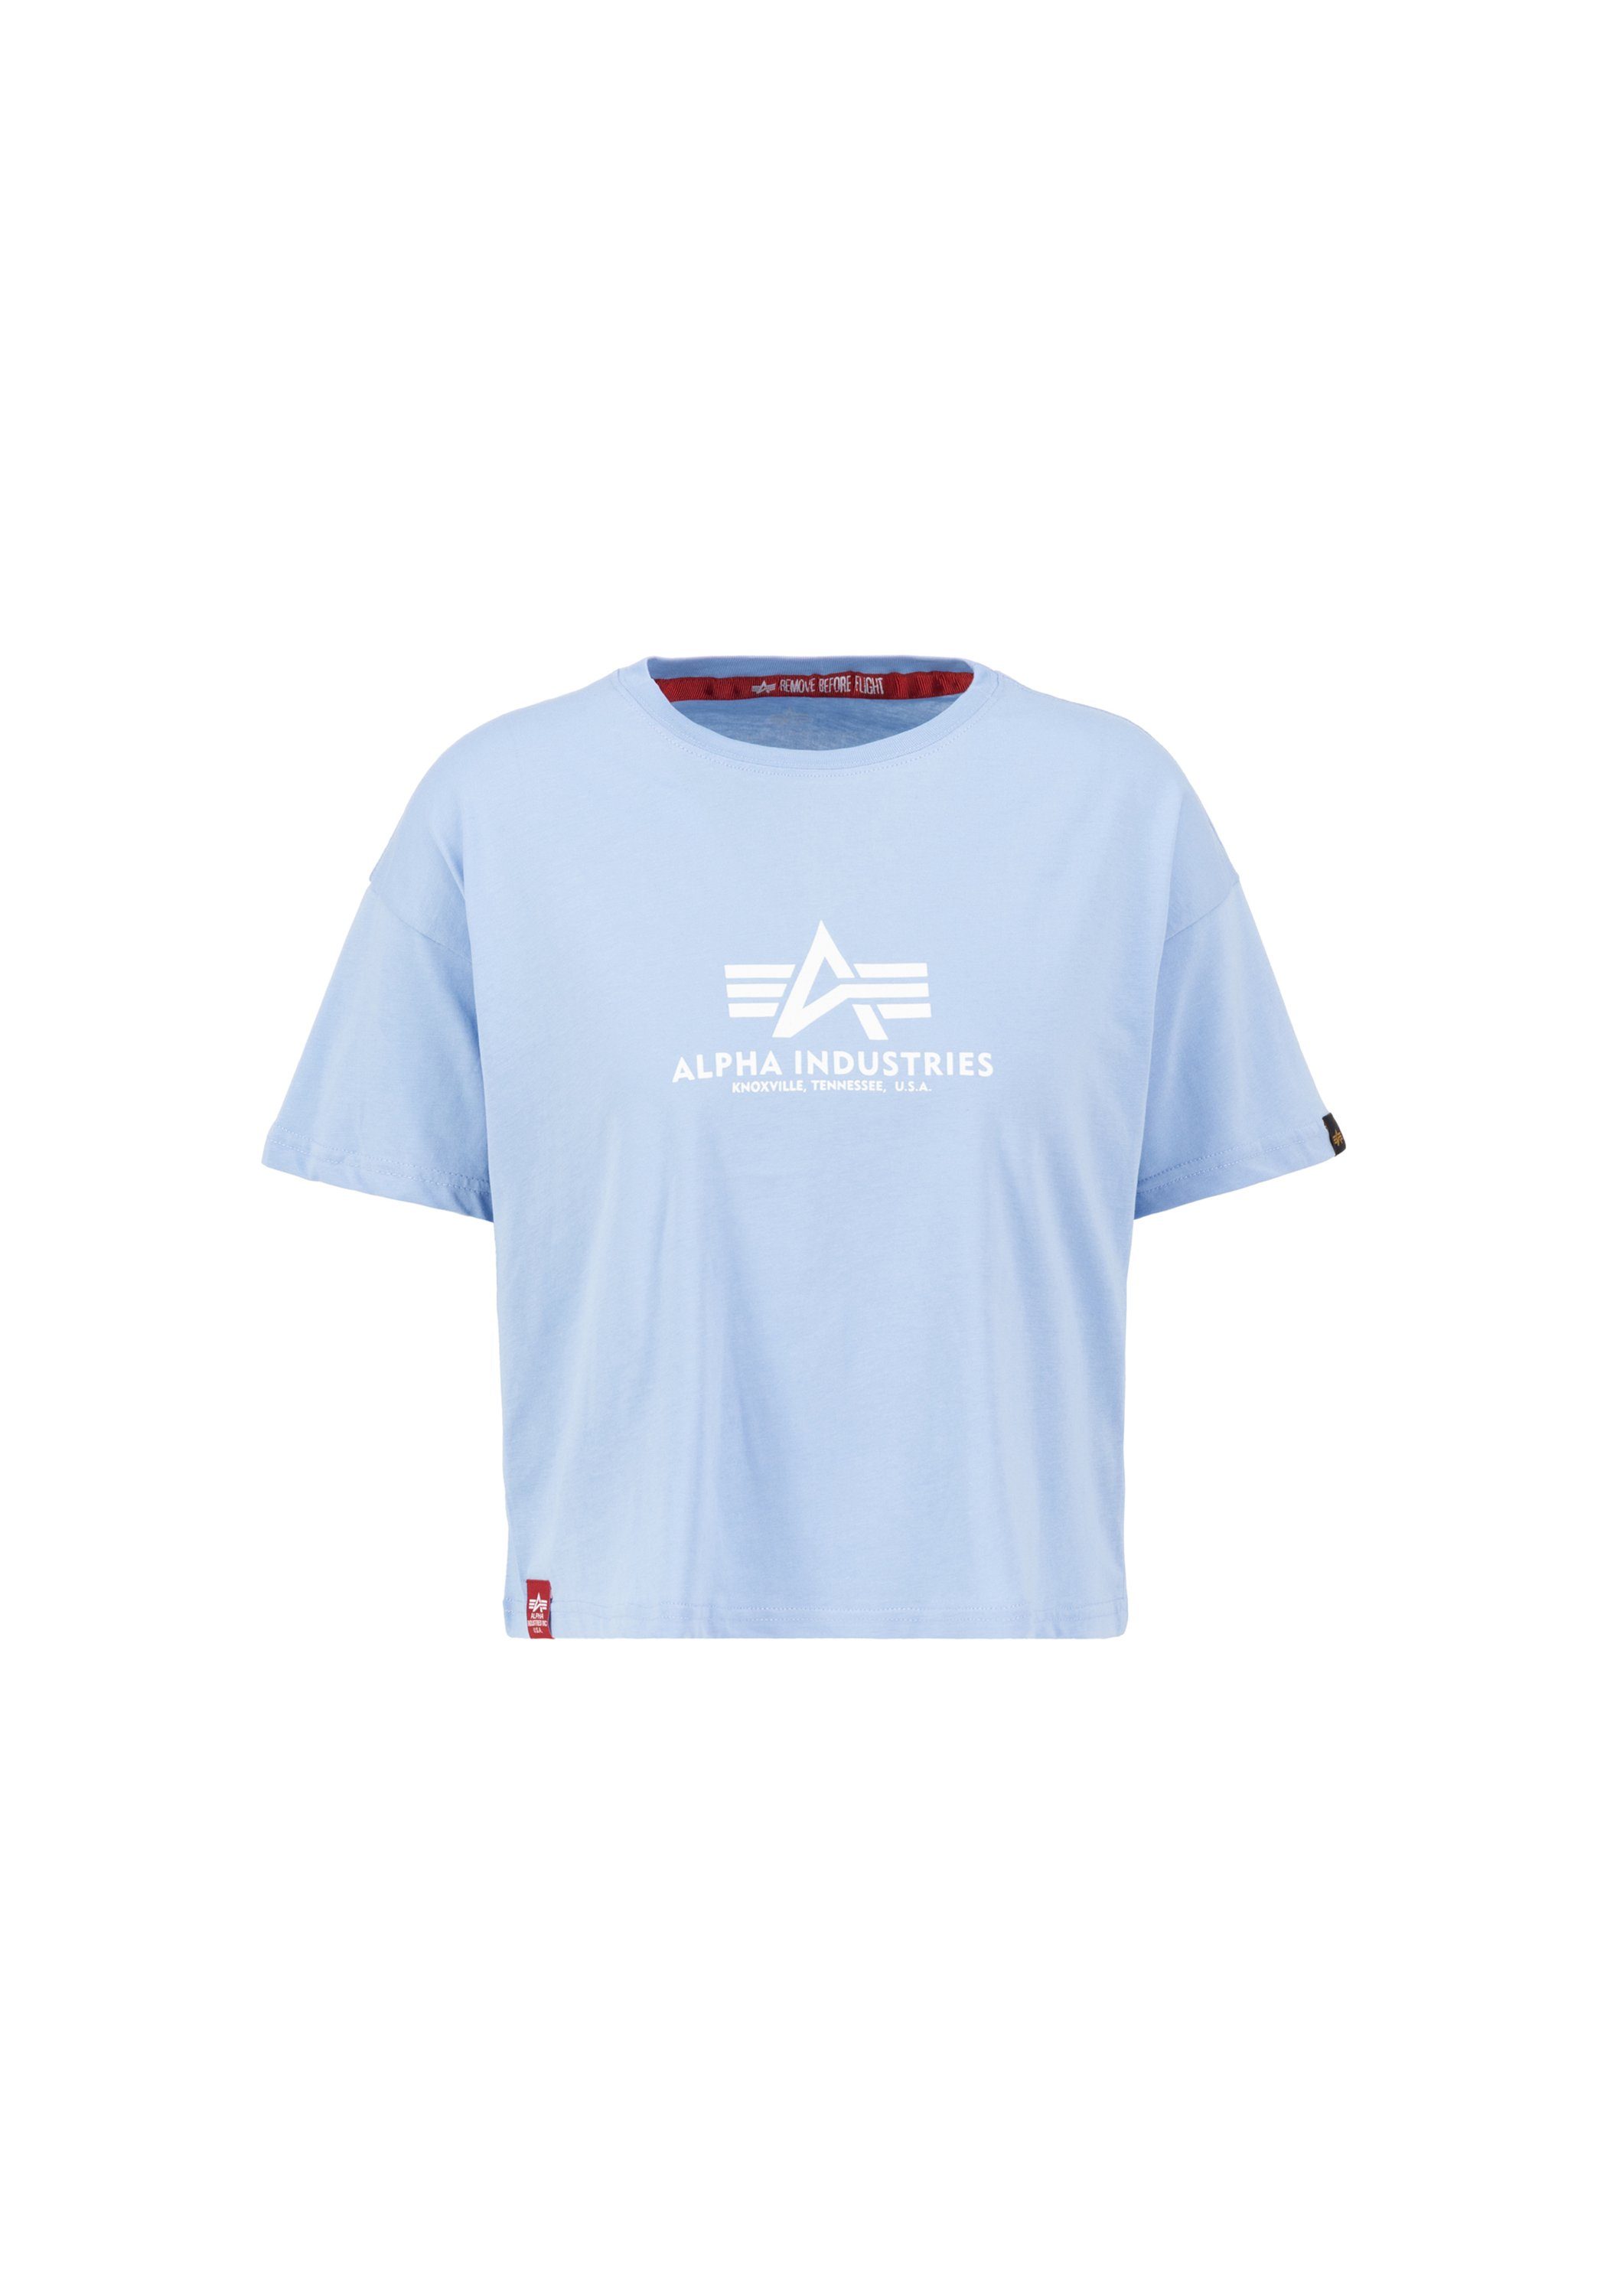 Alpha Industries T-shirt Women T-Shirts Basic T COS Wmn